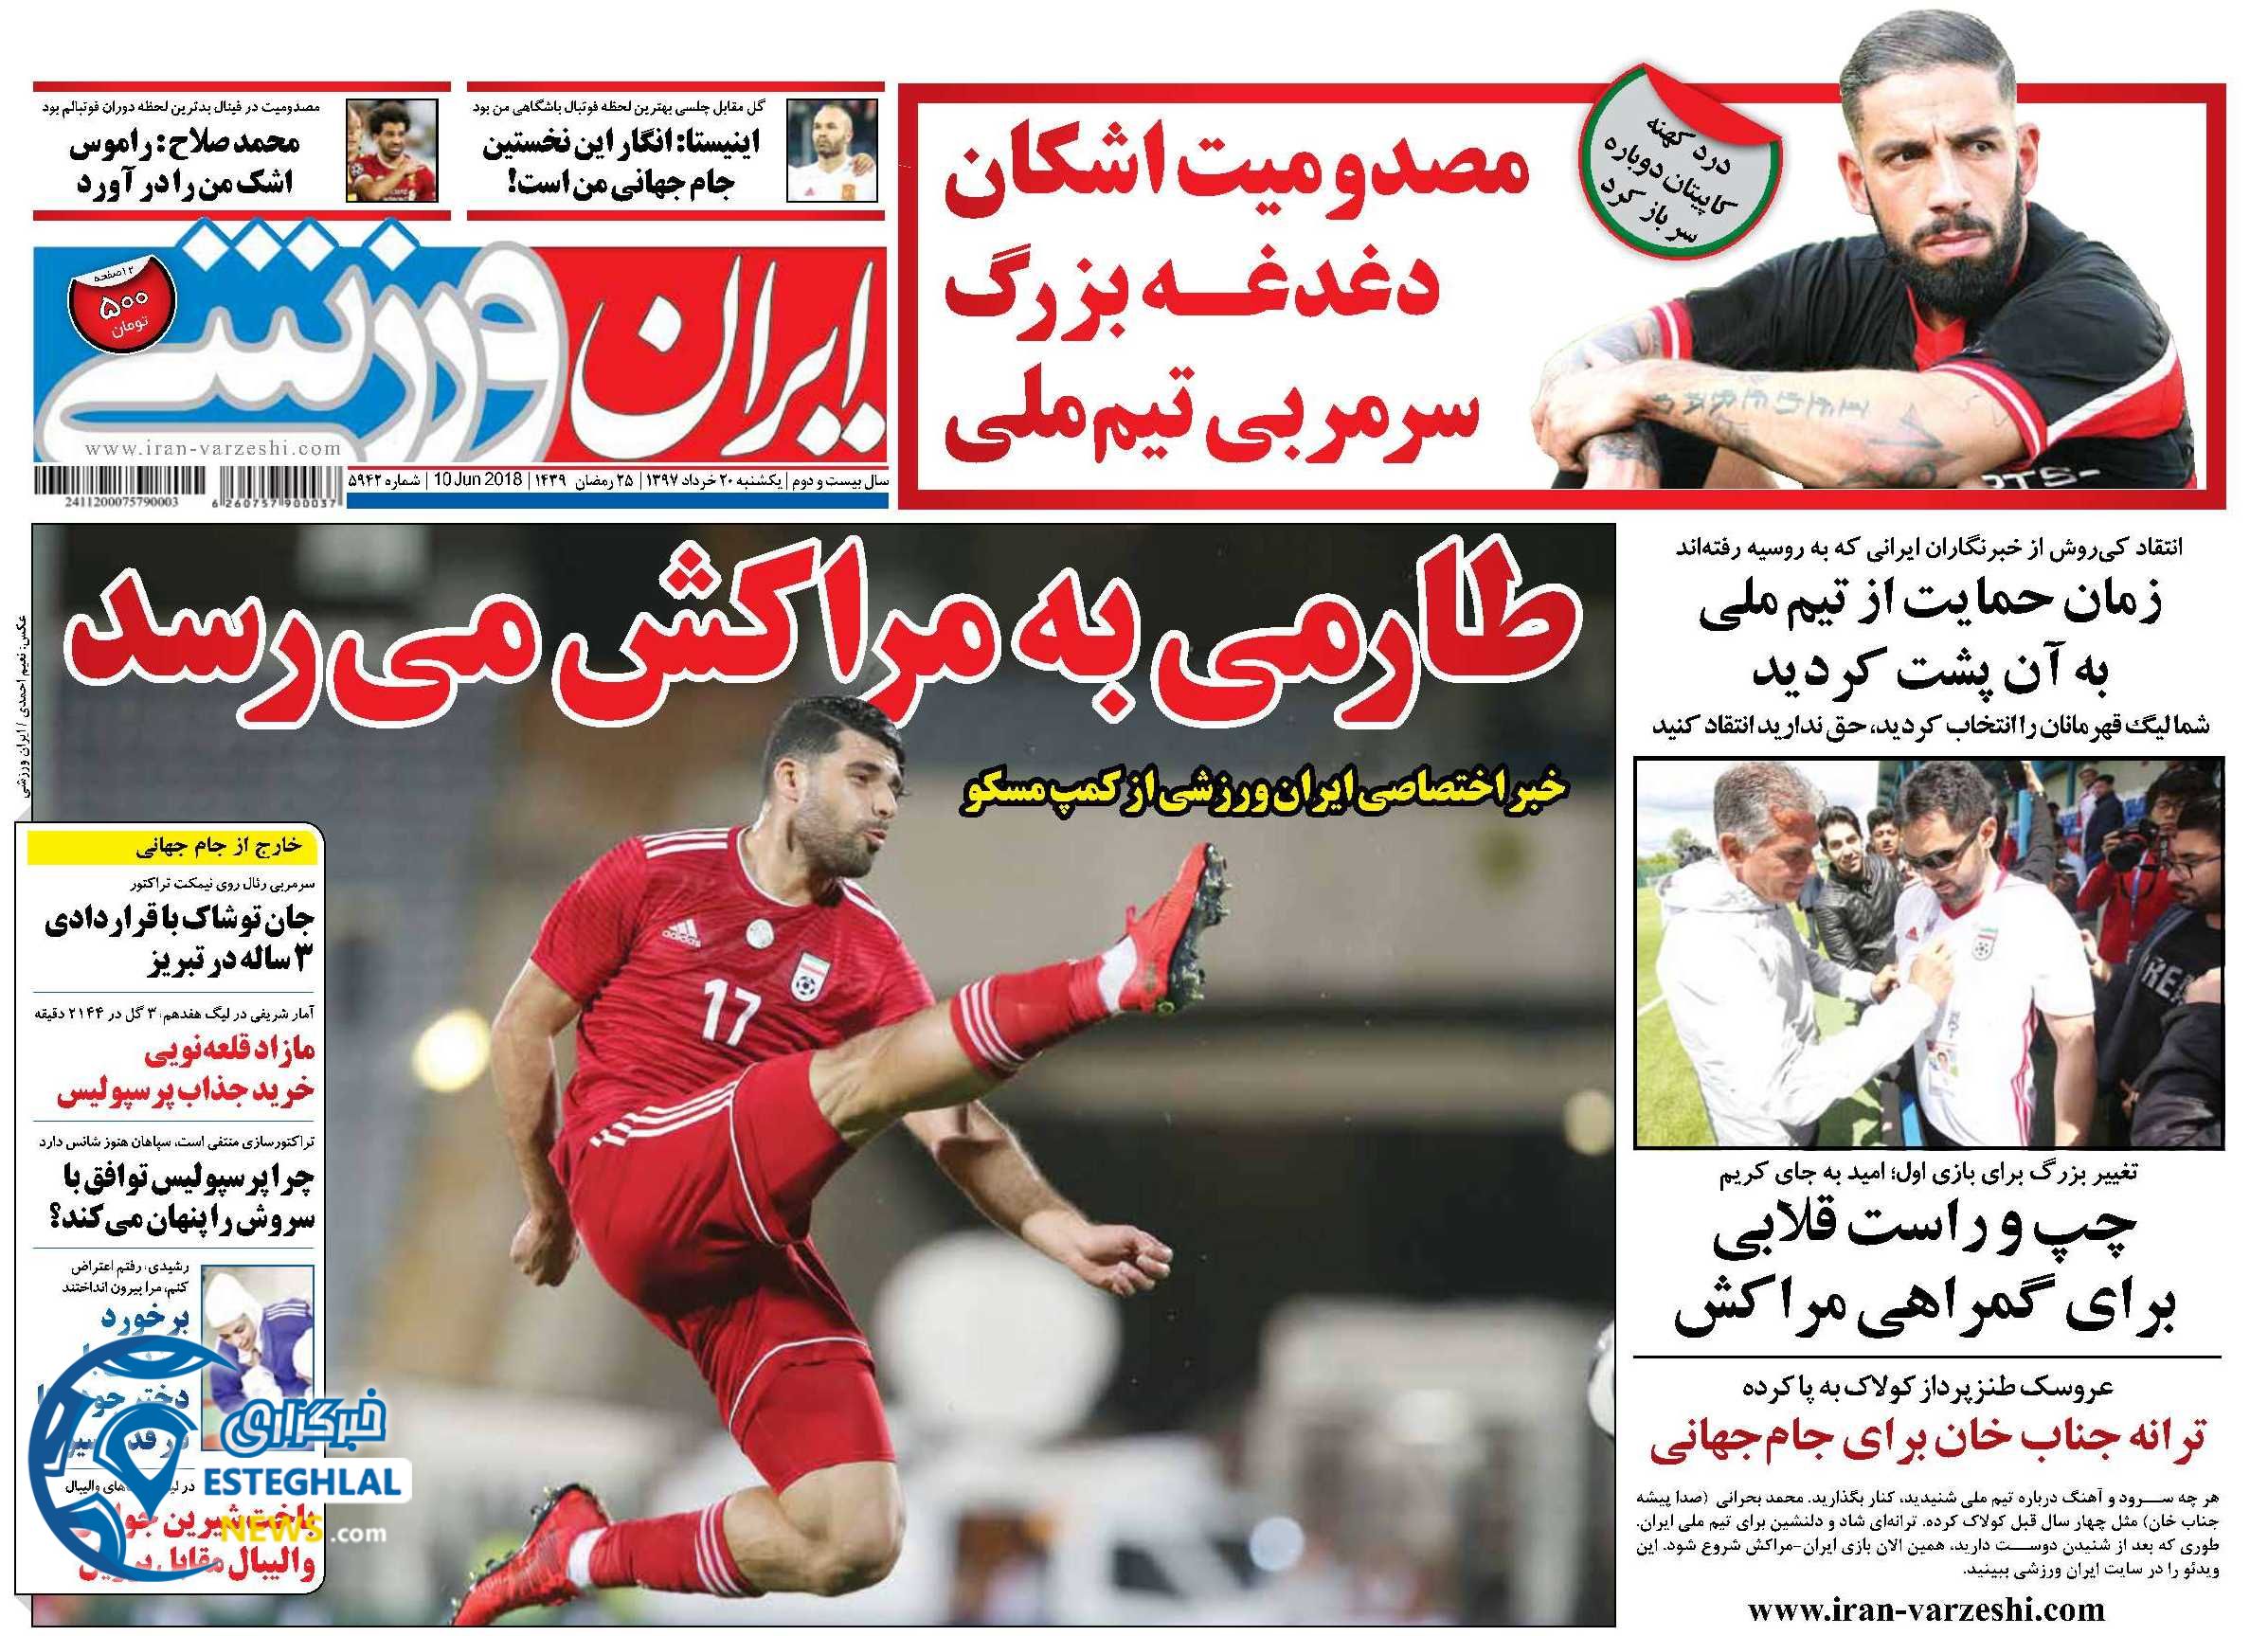   روزنامه ایران ورزشی یکشنبه 20 خرداد 1397    